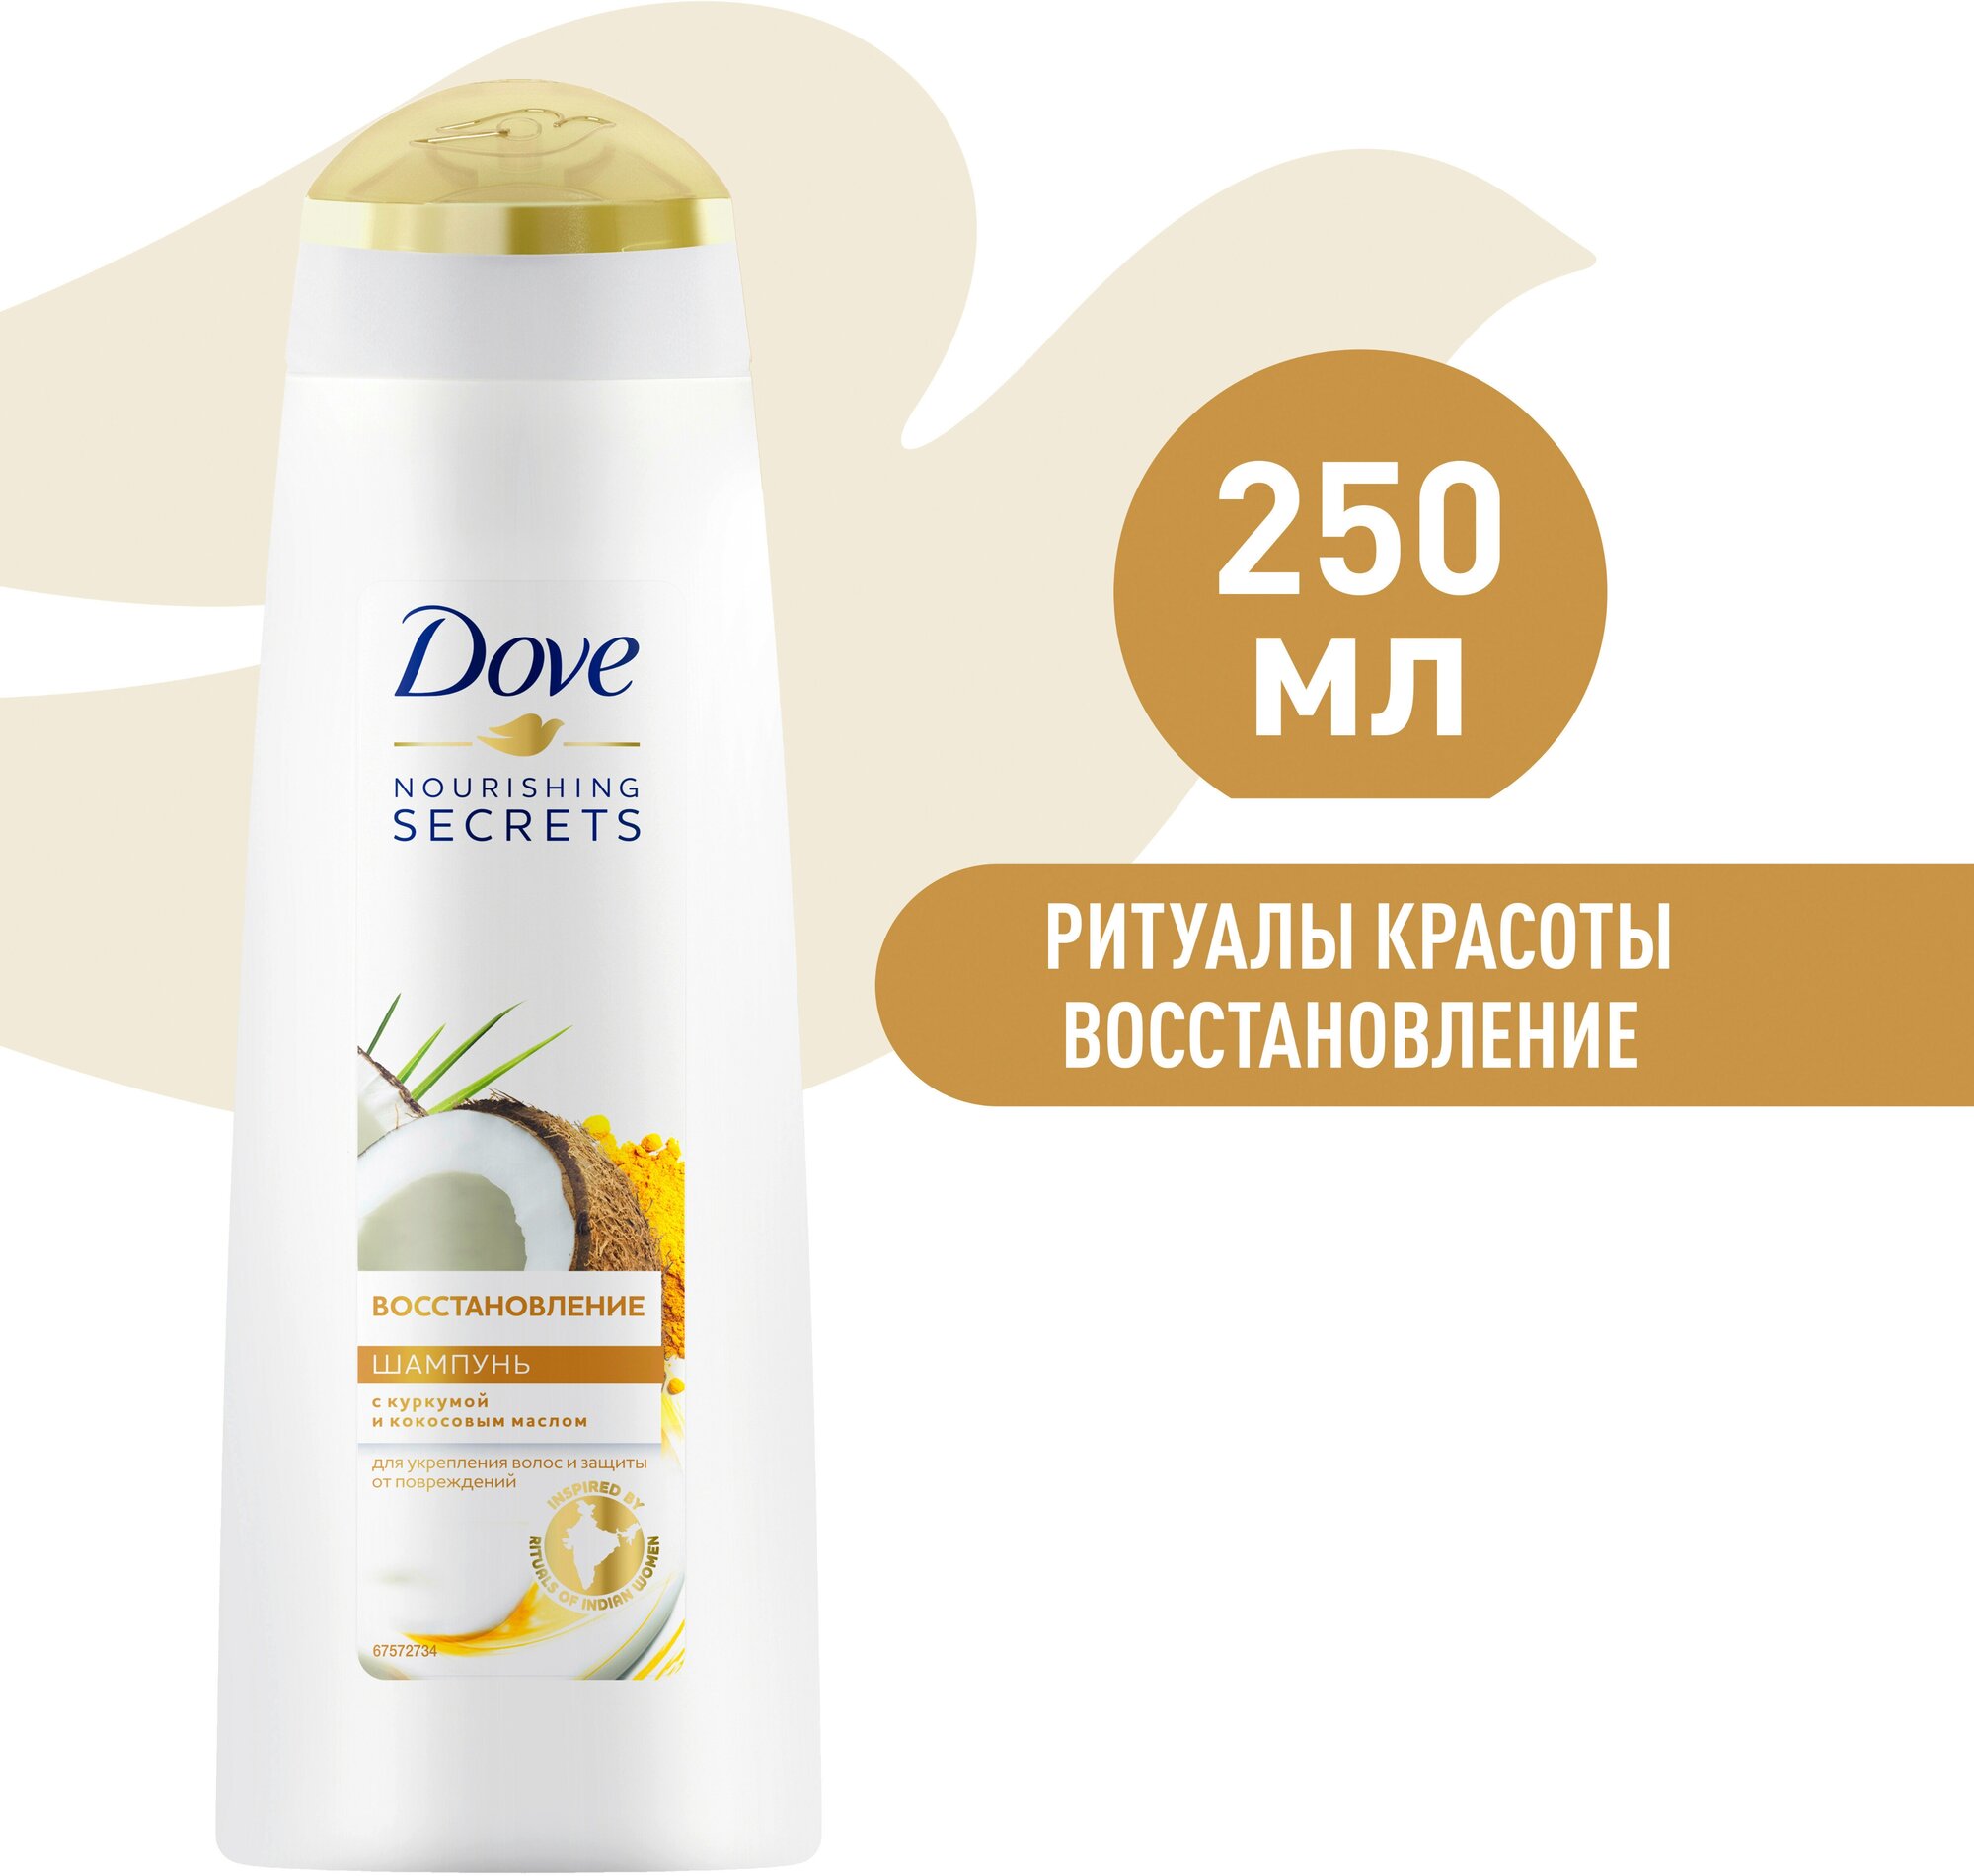 Шампунь для волос женский Dove Nourishing Secrets Восстановление с куркумой и кокосовым маслом, для укрепления волос, 250 мл, 